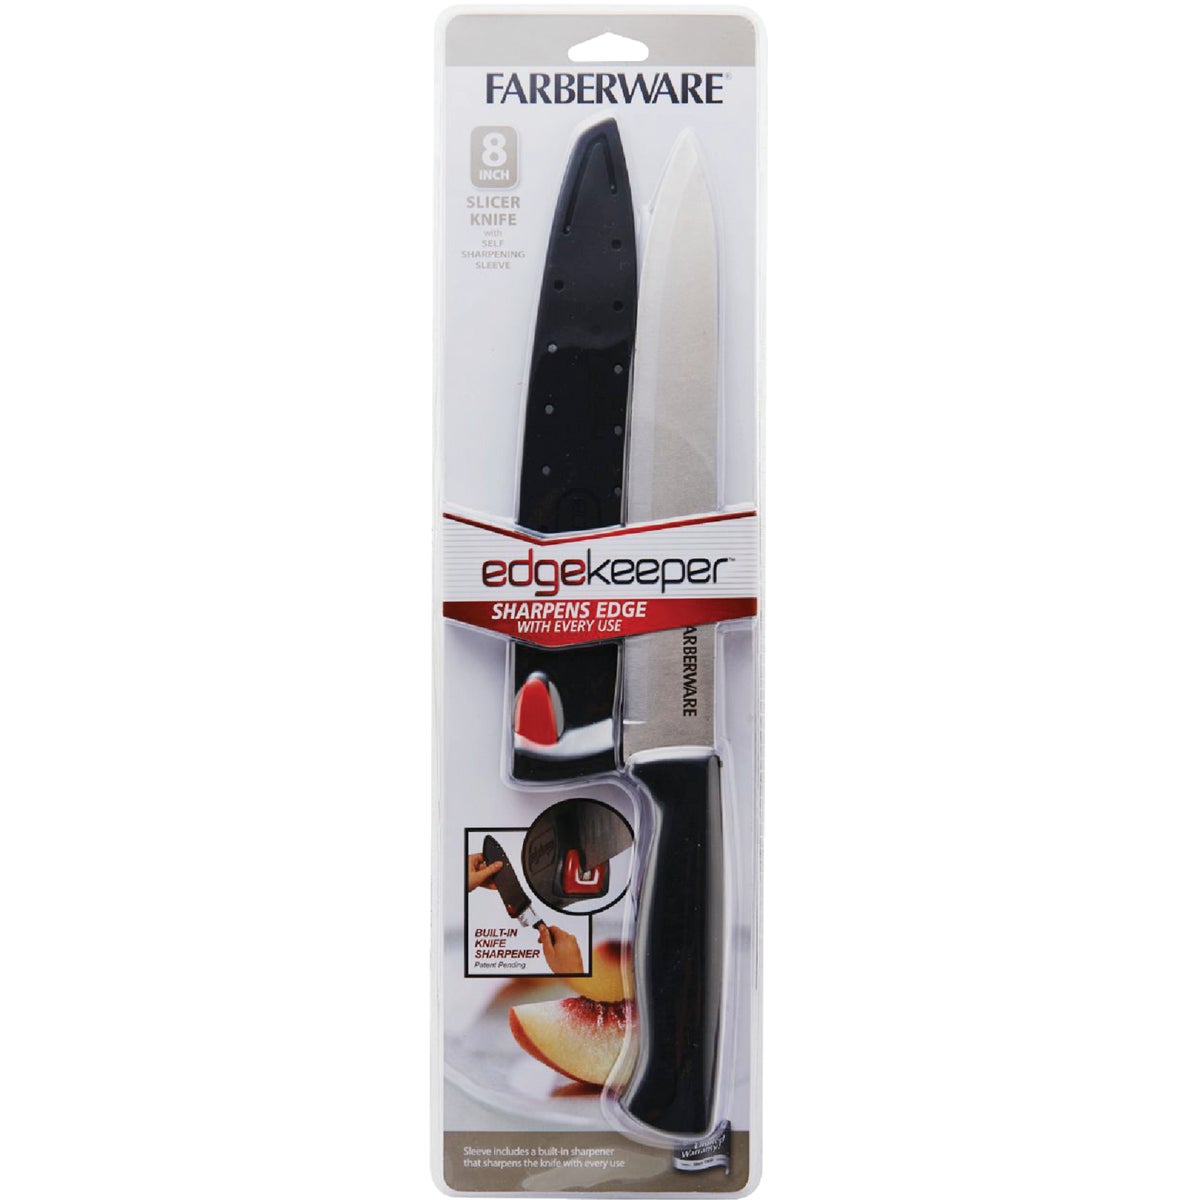 Farberware 8 In. Black Slicer Knife with Edgekeeper Sheath